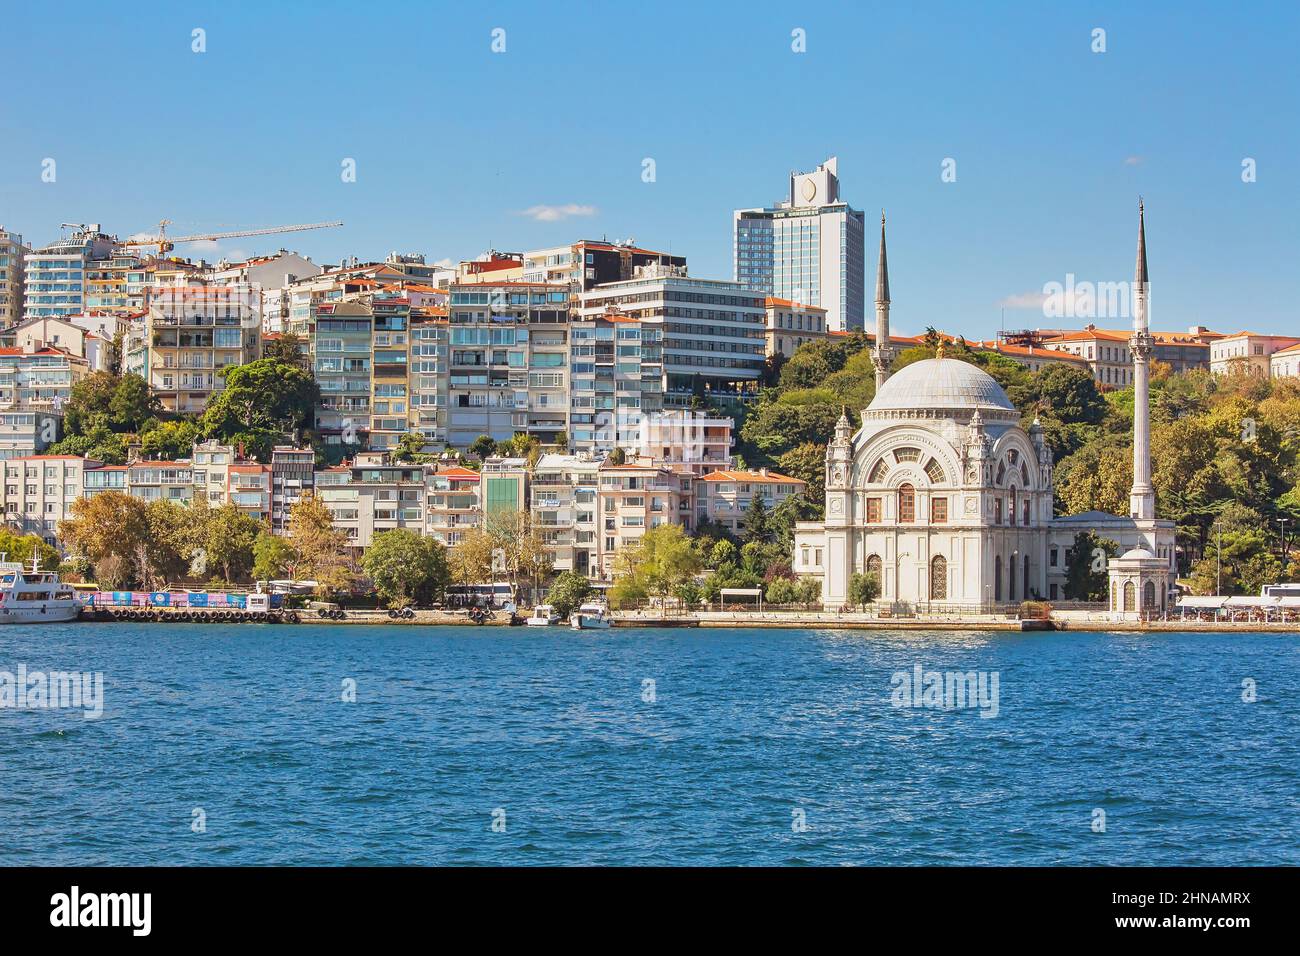 Echte Architektur am Ufer des Bosporus, beliebtes Reiseziel und wichtiger Durchgang zwischen Europa und Asien. Bootstour auf dem Bosporus. Stockfoto